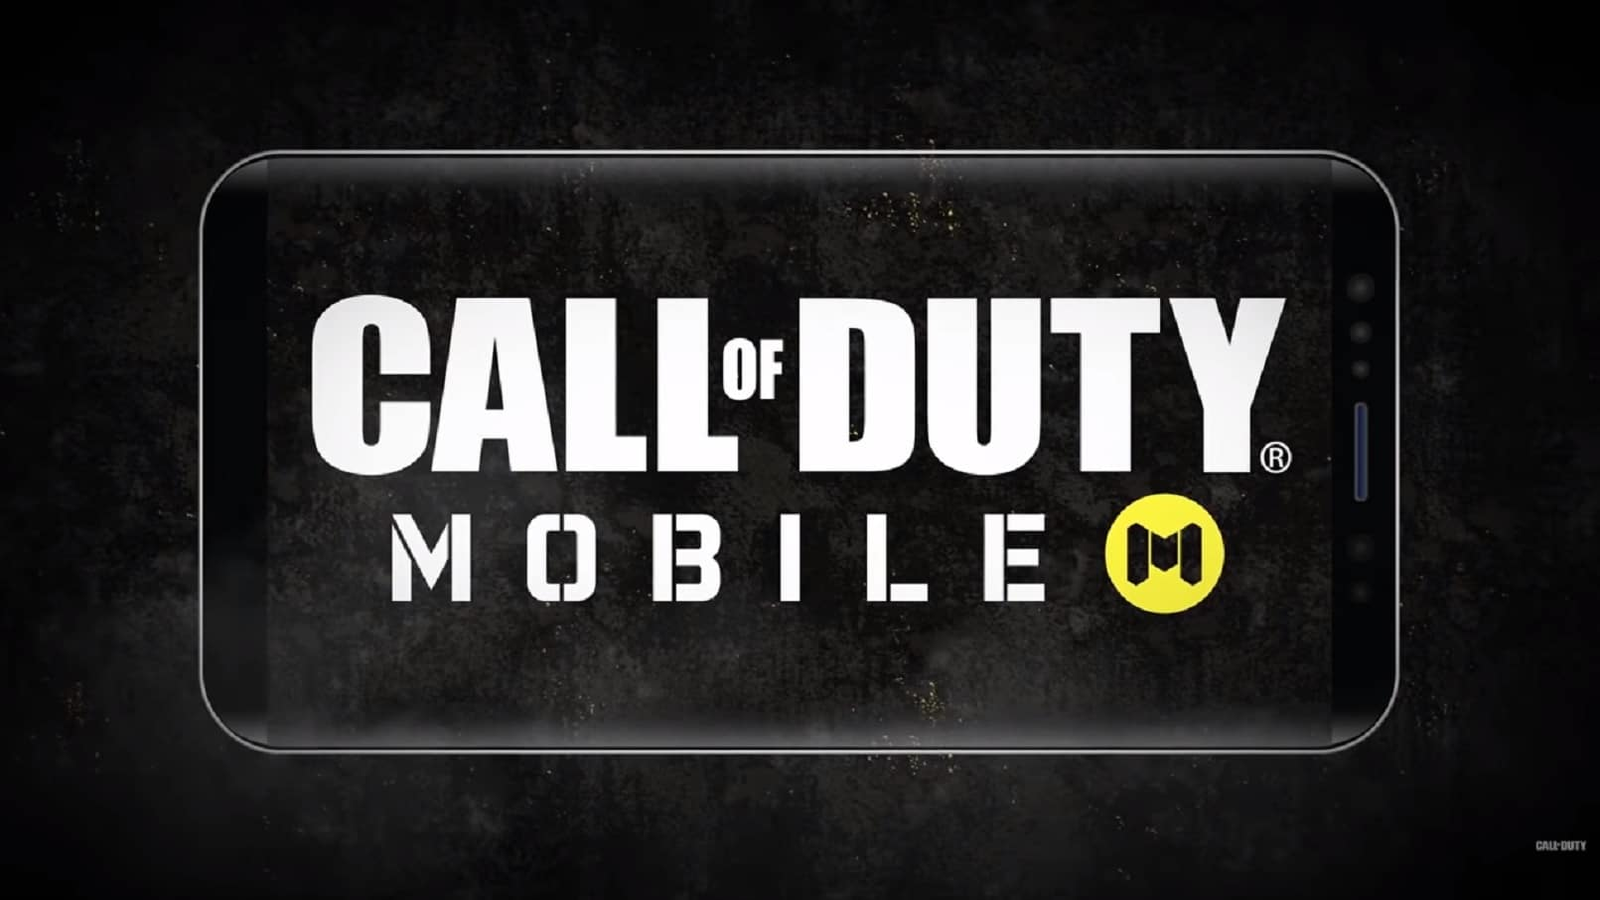 Call of Duty Mobile é eleito melhor jogo do ano do Google Play